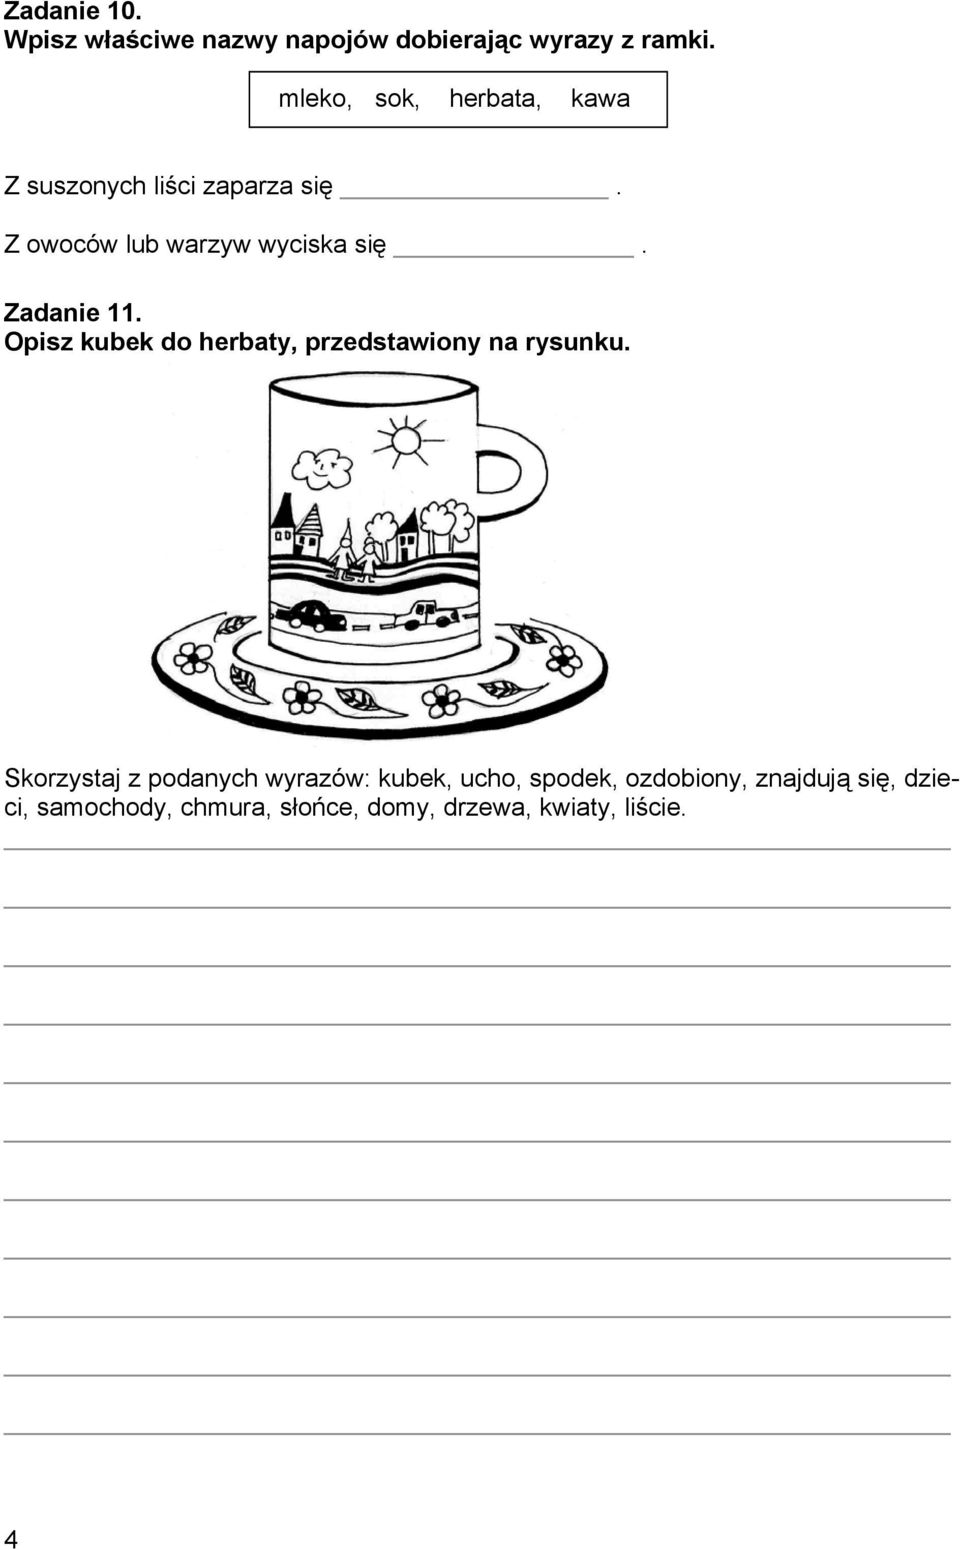 Zadanie 11. Opisz kubek do herbaty, przedstawiony na rysunku.